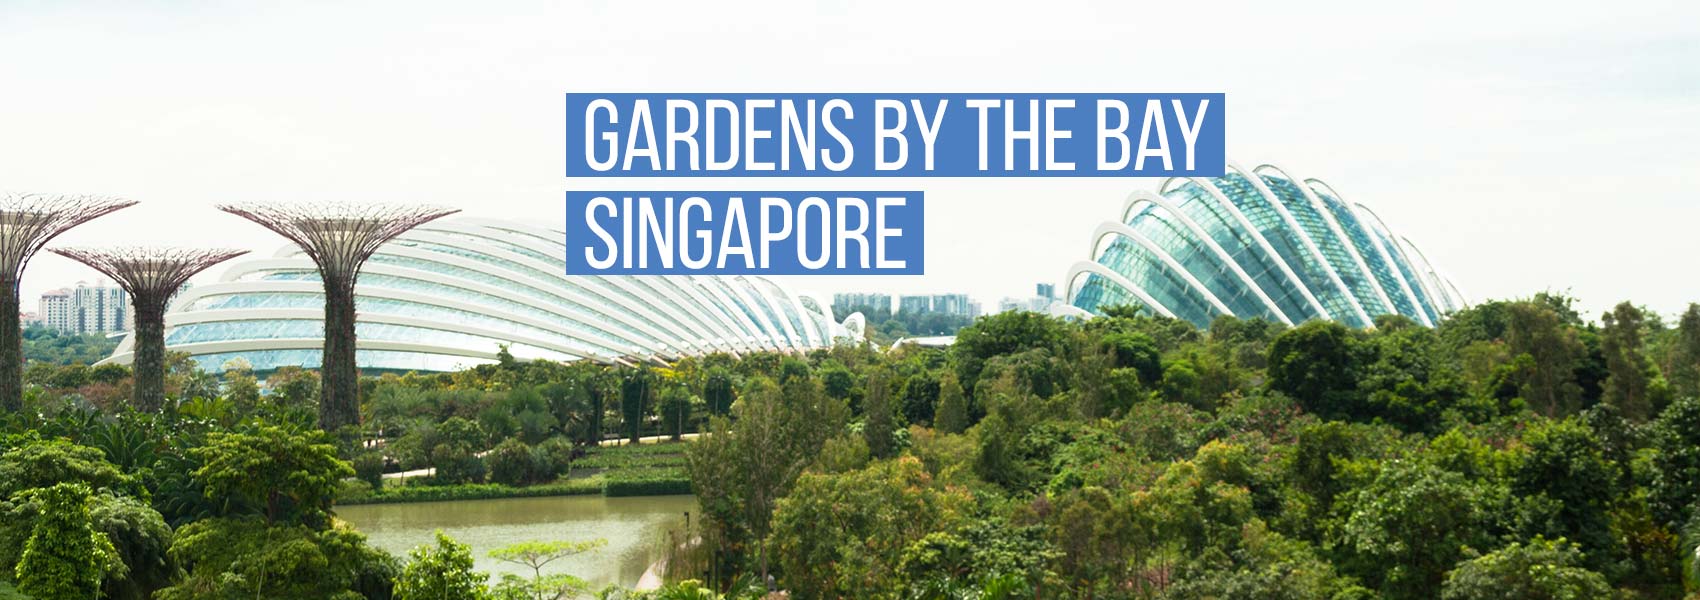 Hasil gambar untuk gardens by the bay singapore